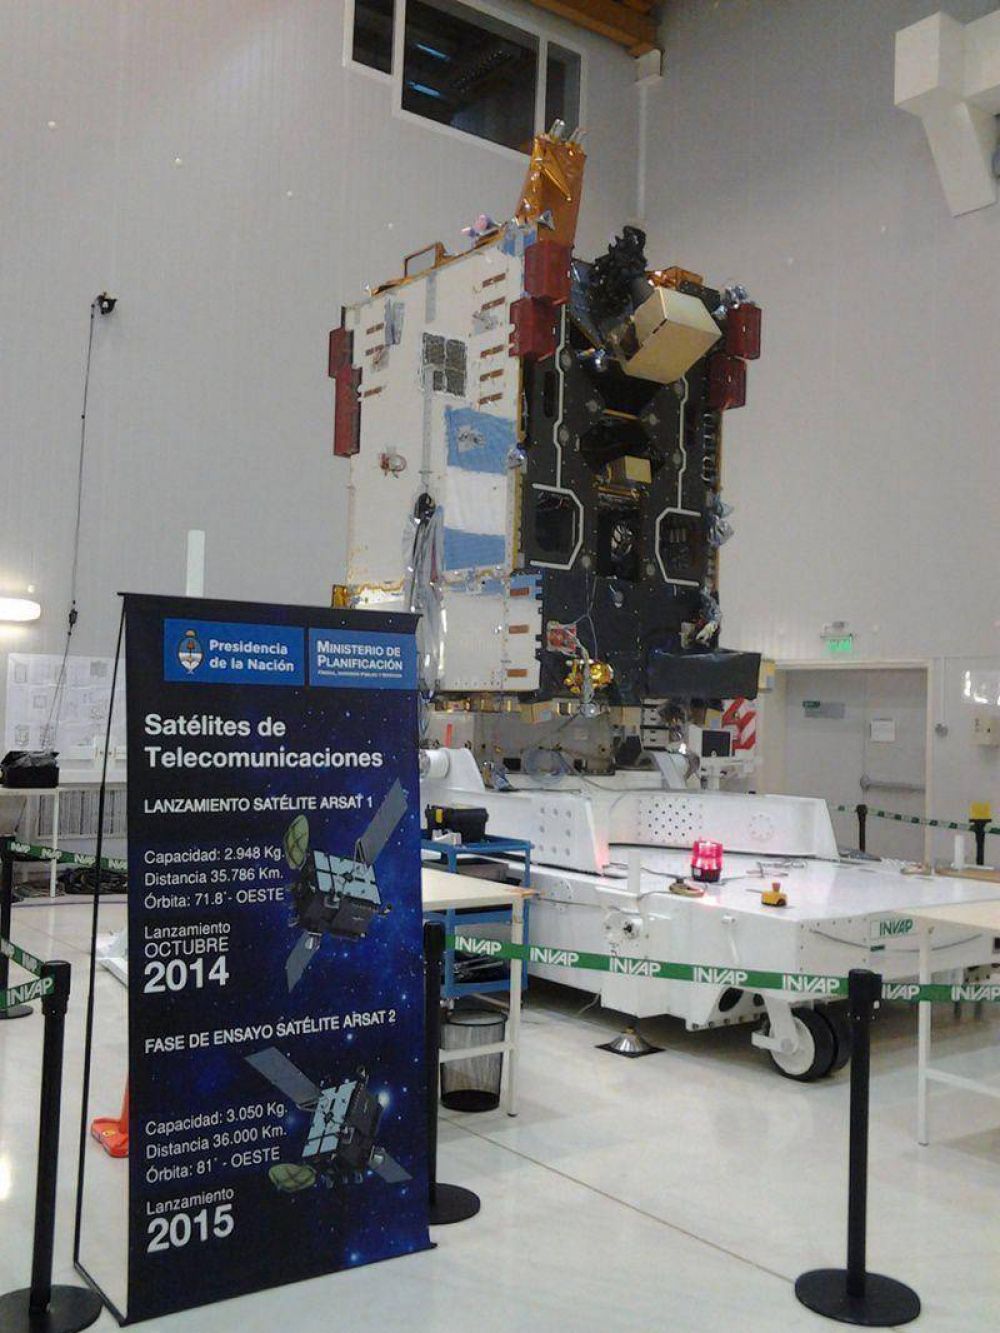 INVAP ya est haciendo ensayos con otro satlite: el ARSAT 2 que ser lanzado en 2015